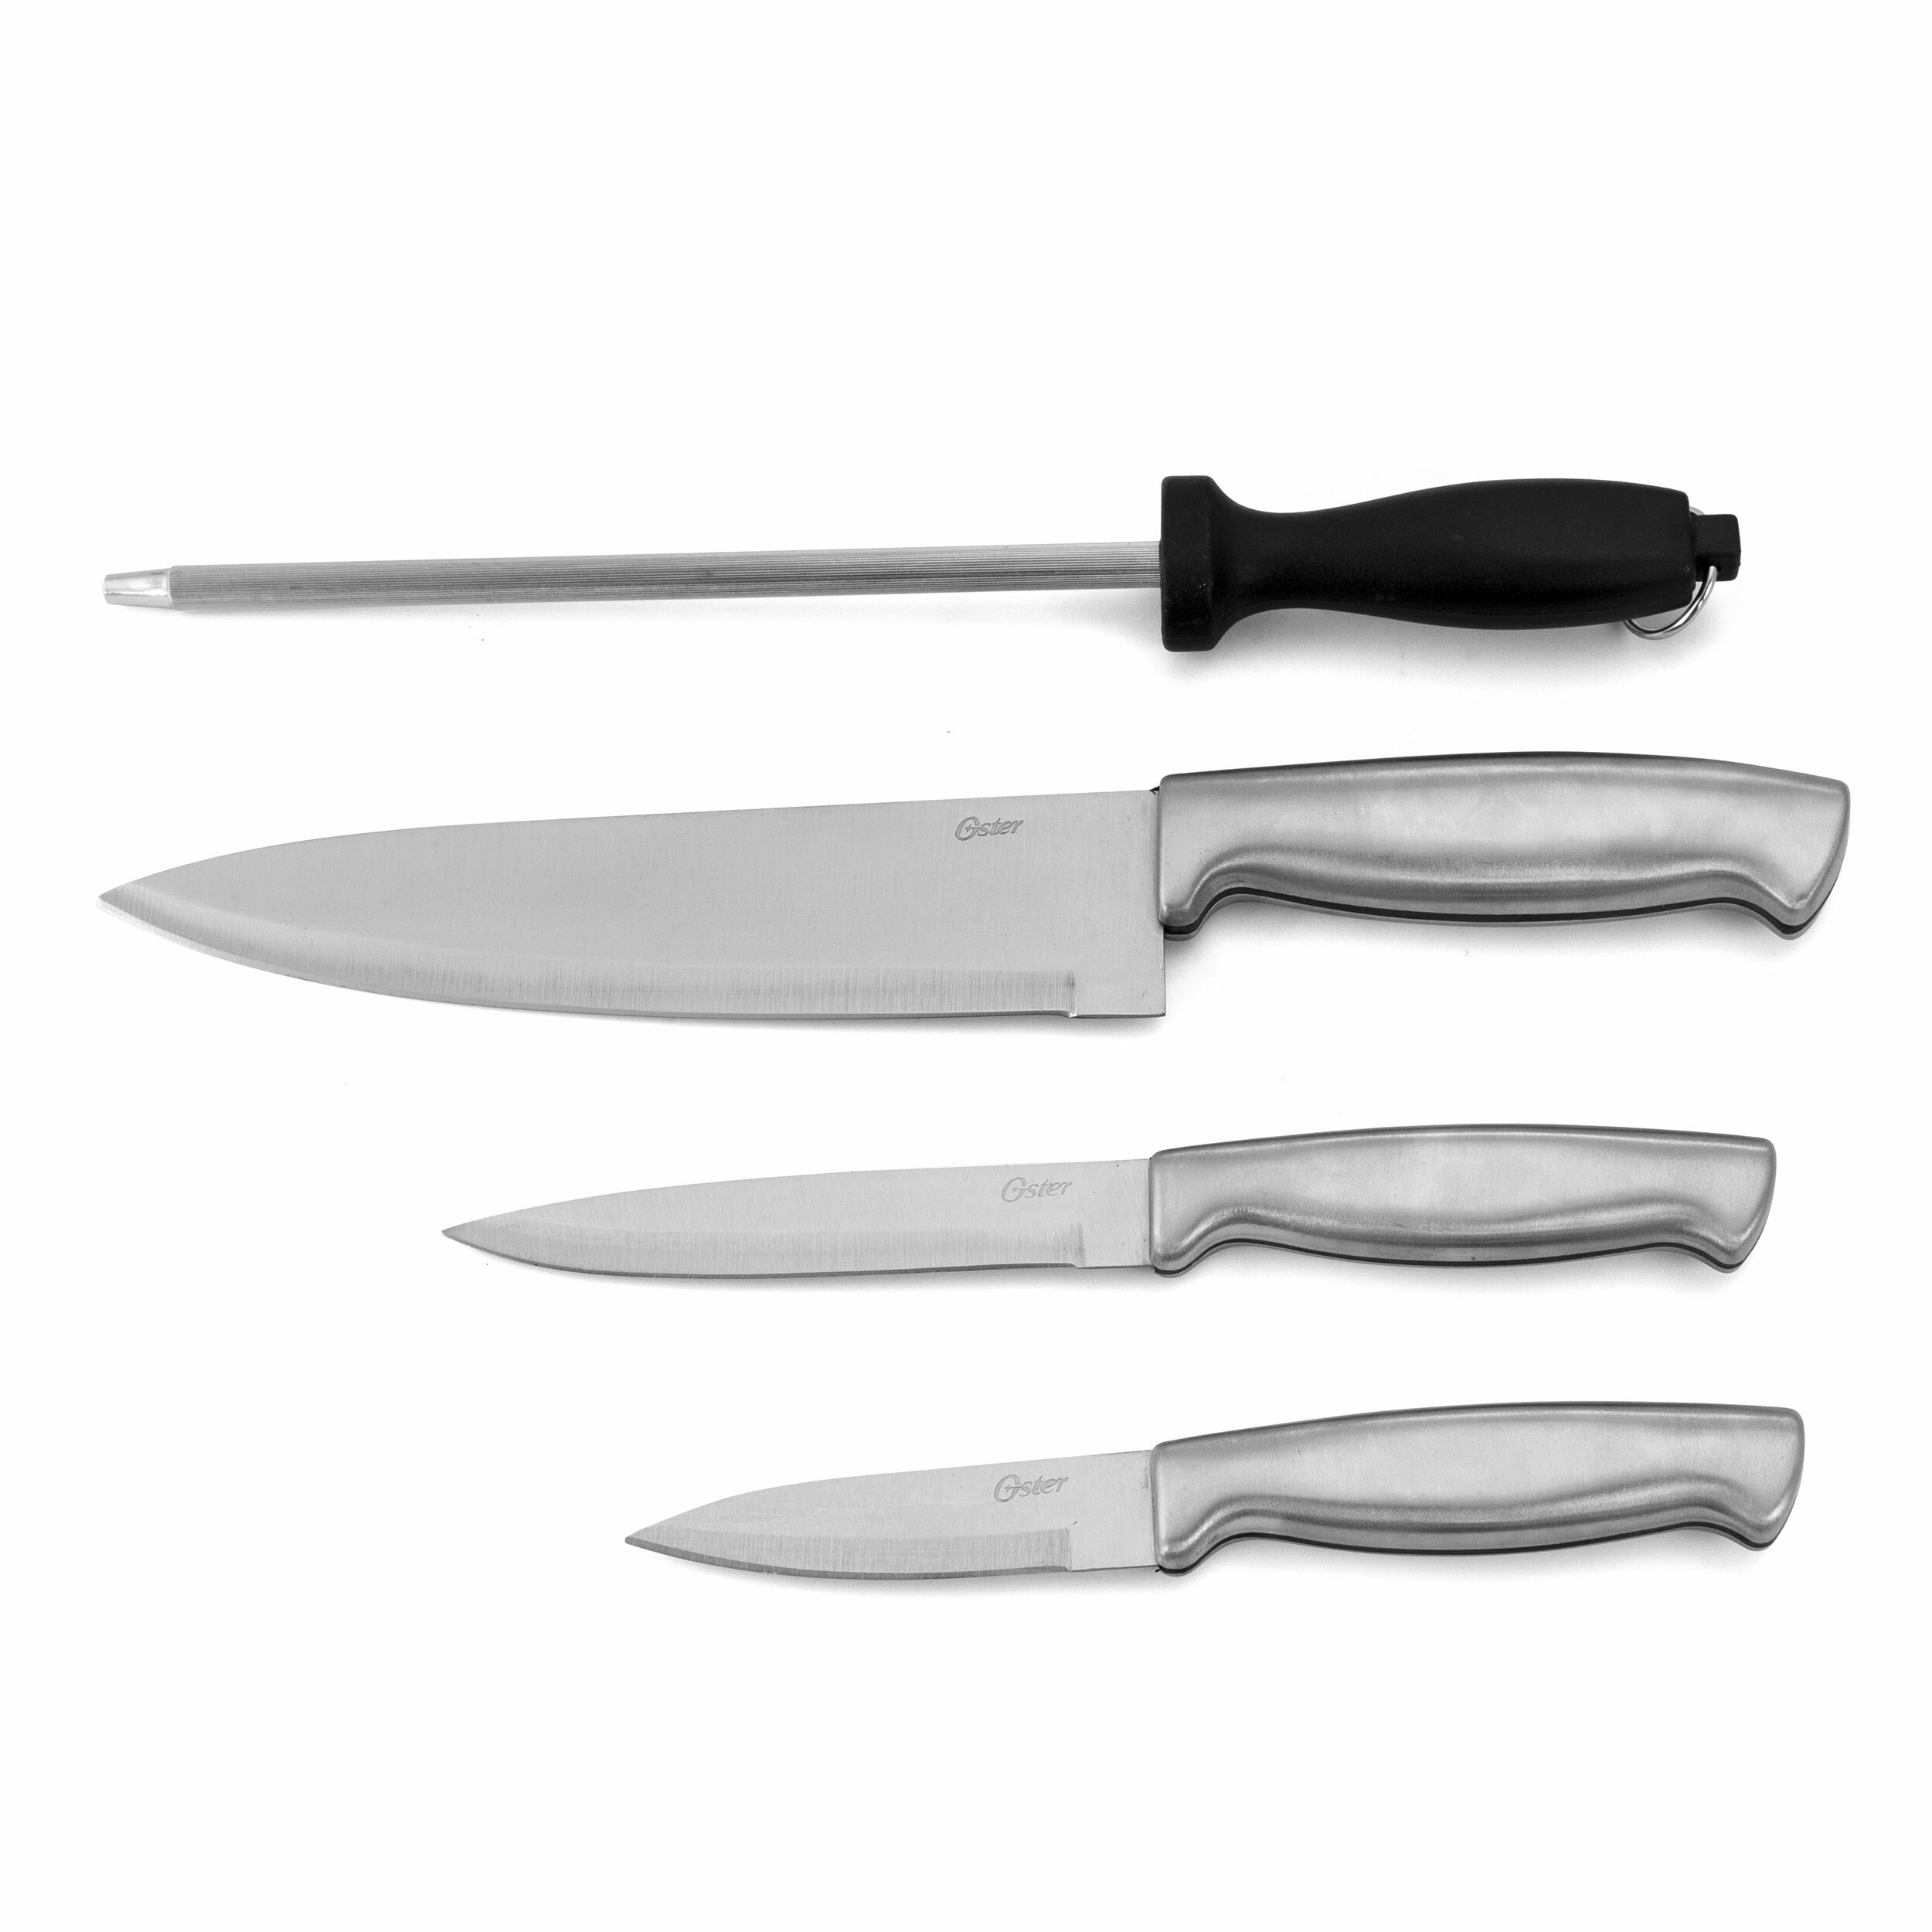 https://assets.wfcdn.com/im/88626356/compr-r85/1168/116884123/oster-baldwyn-4-piece-assorted-knife-set.jpg